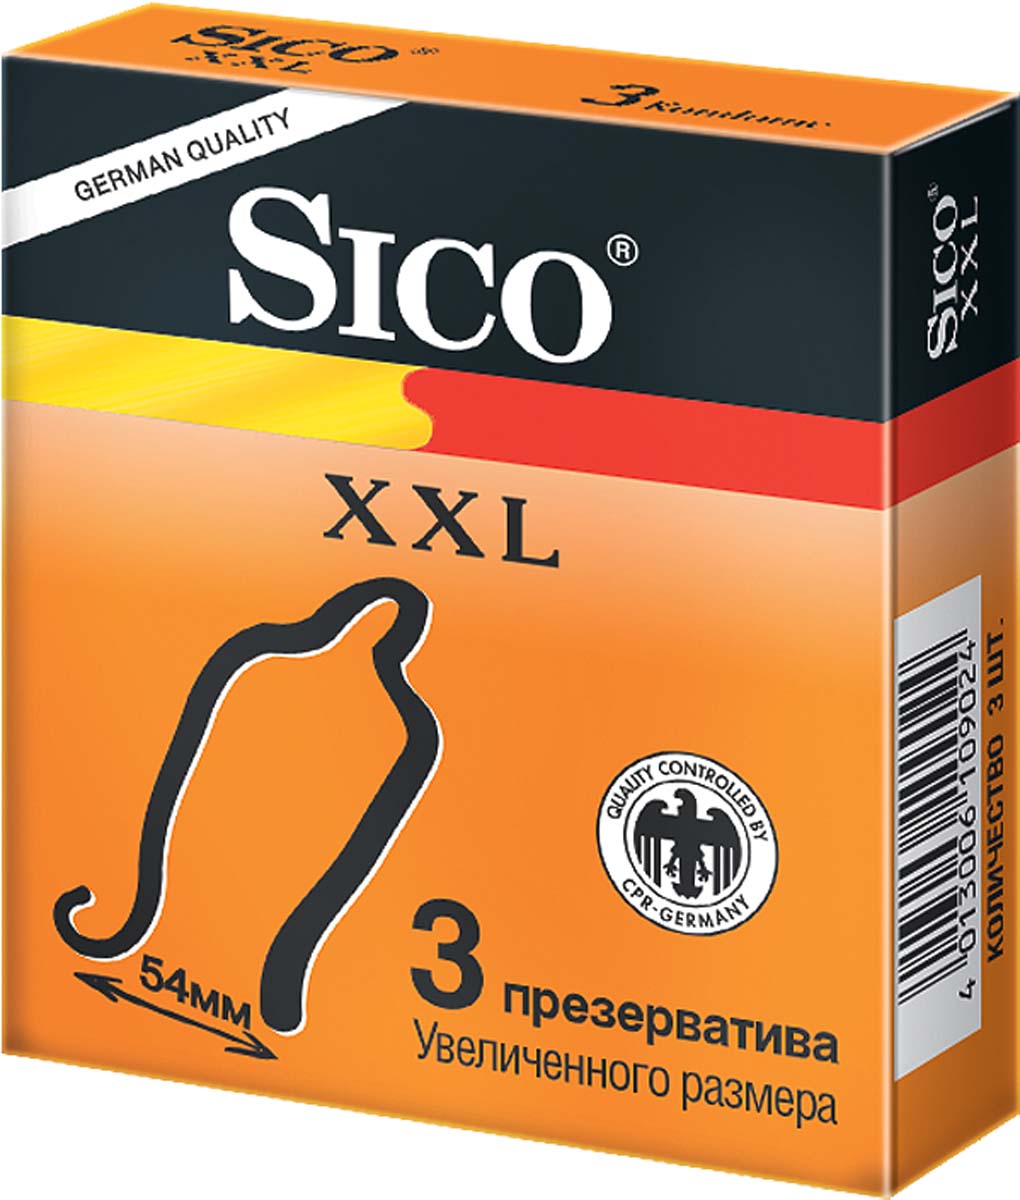 SICO Презервативы XXL, увеличенного размера, 3 шт